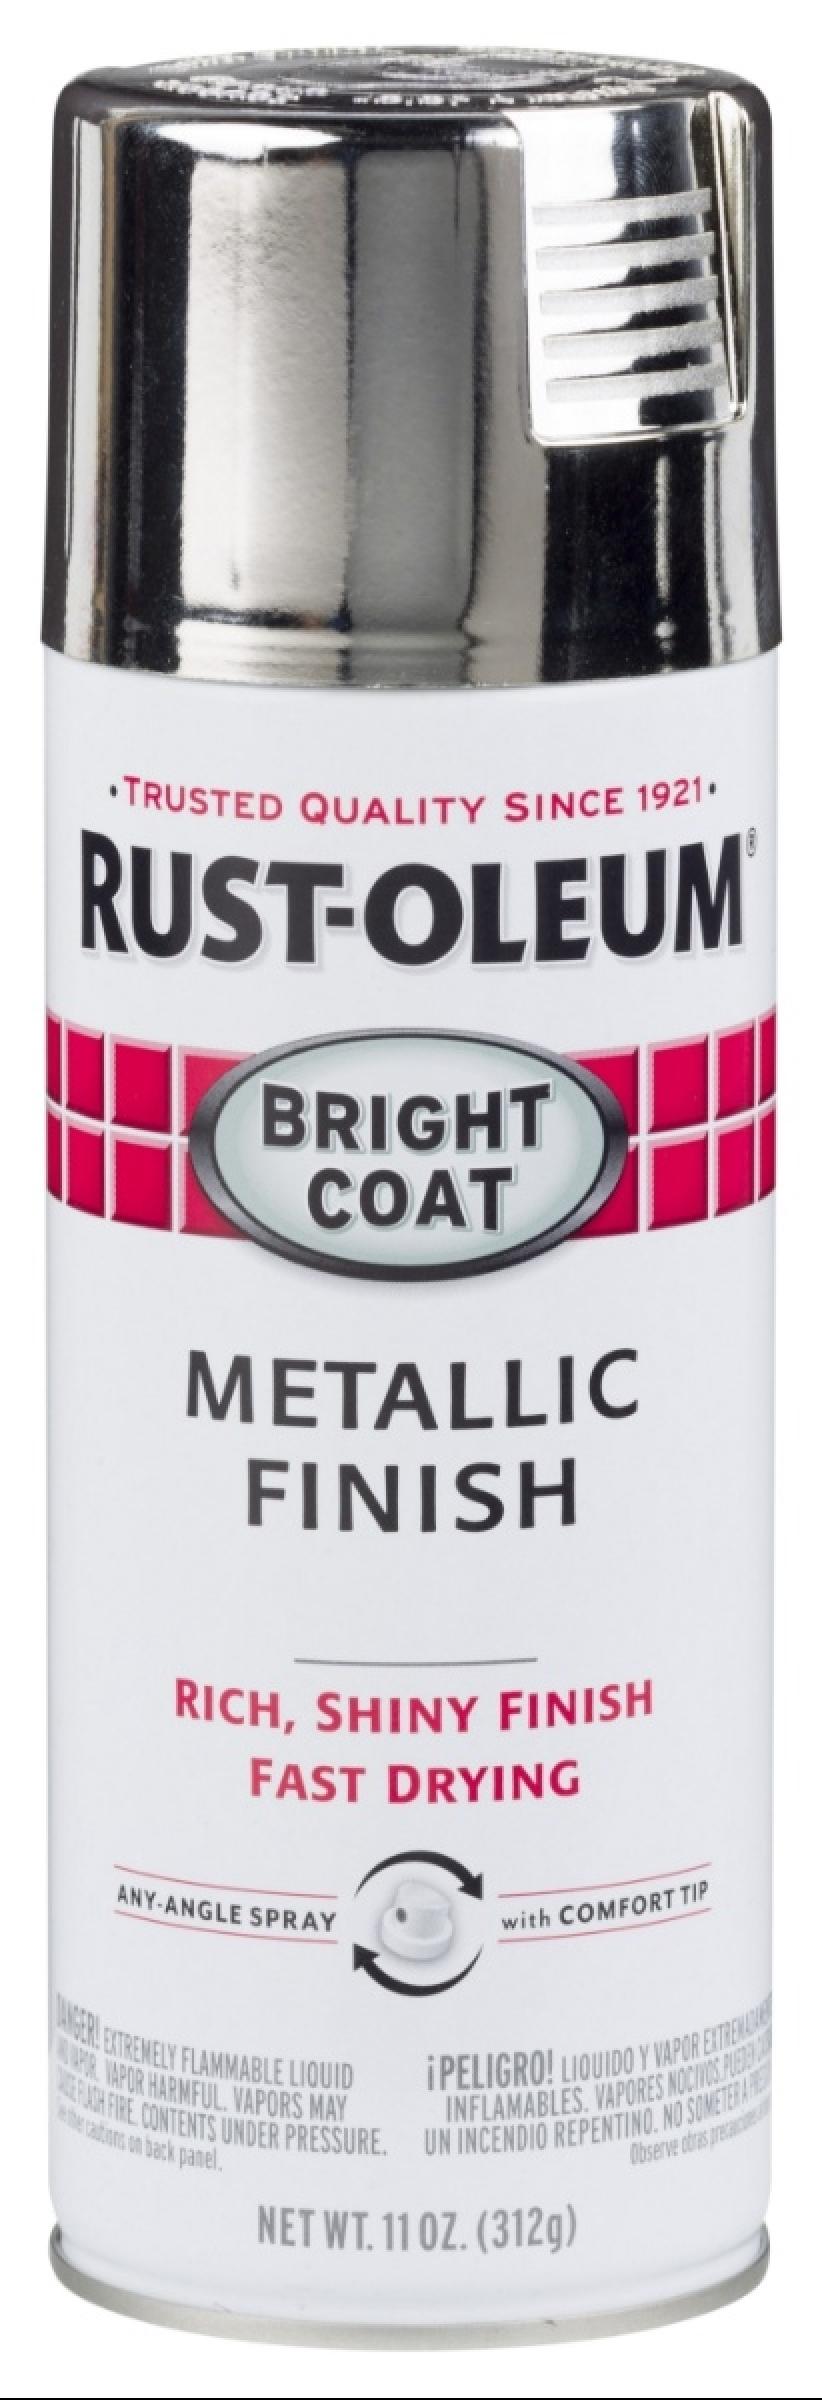 Rust-Oleum Bright Coat Metallic Finish Spray Paint